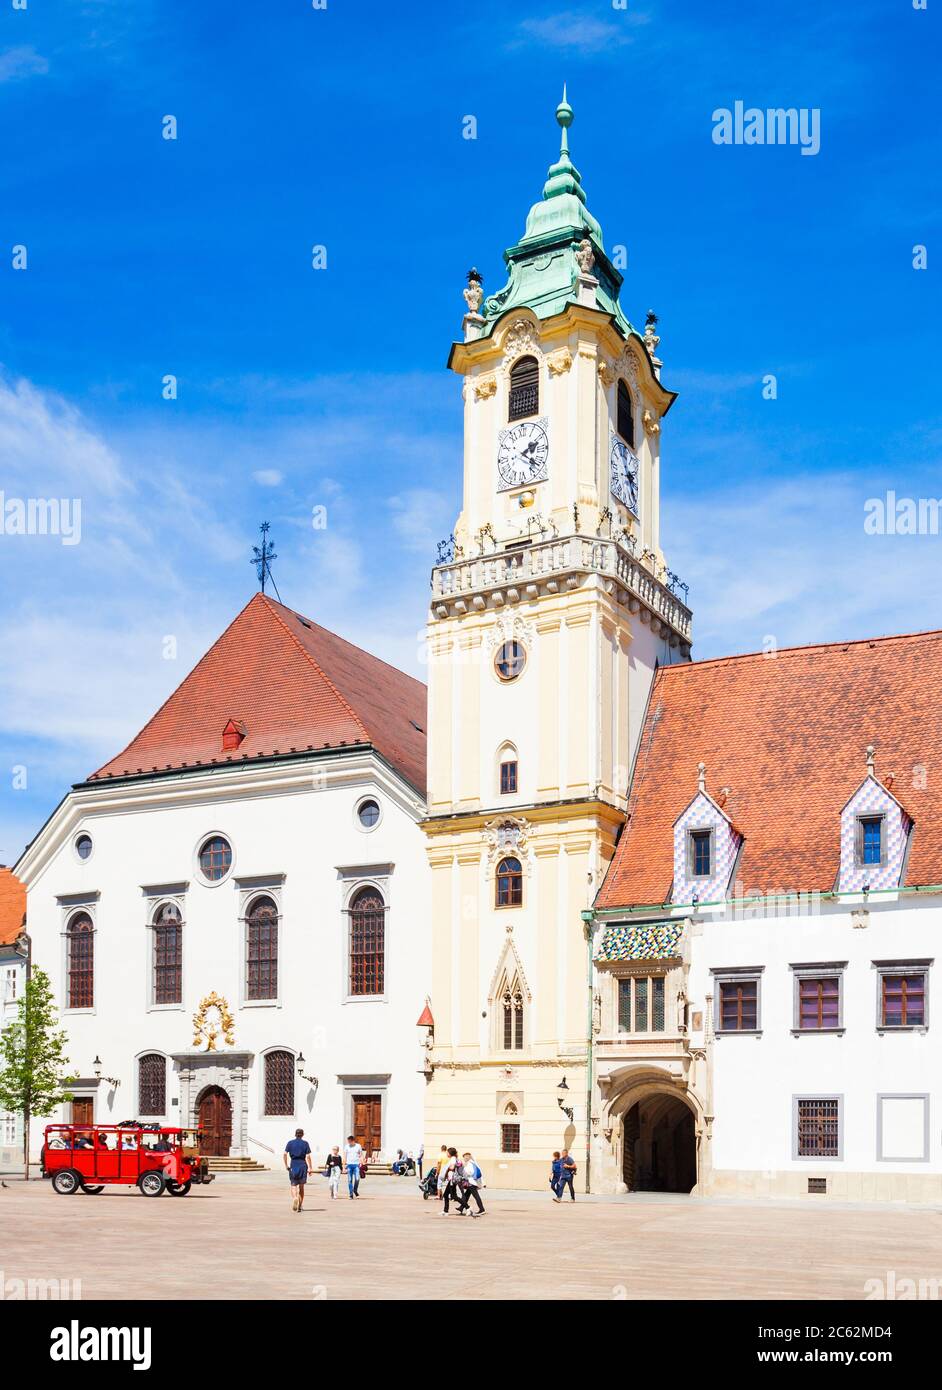 Das Alte Rathaus von Bratislava ist ein Gebäudekomplex in der Altstadt von Bratislava, Slowakei. Das Alte Rathaus ist das älteste Rathaus der Slowakei. Stockfoto